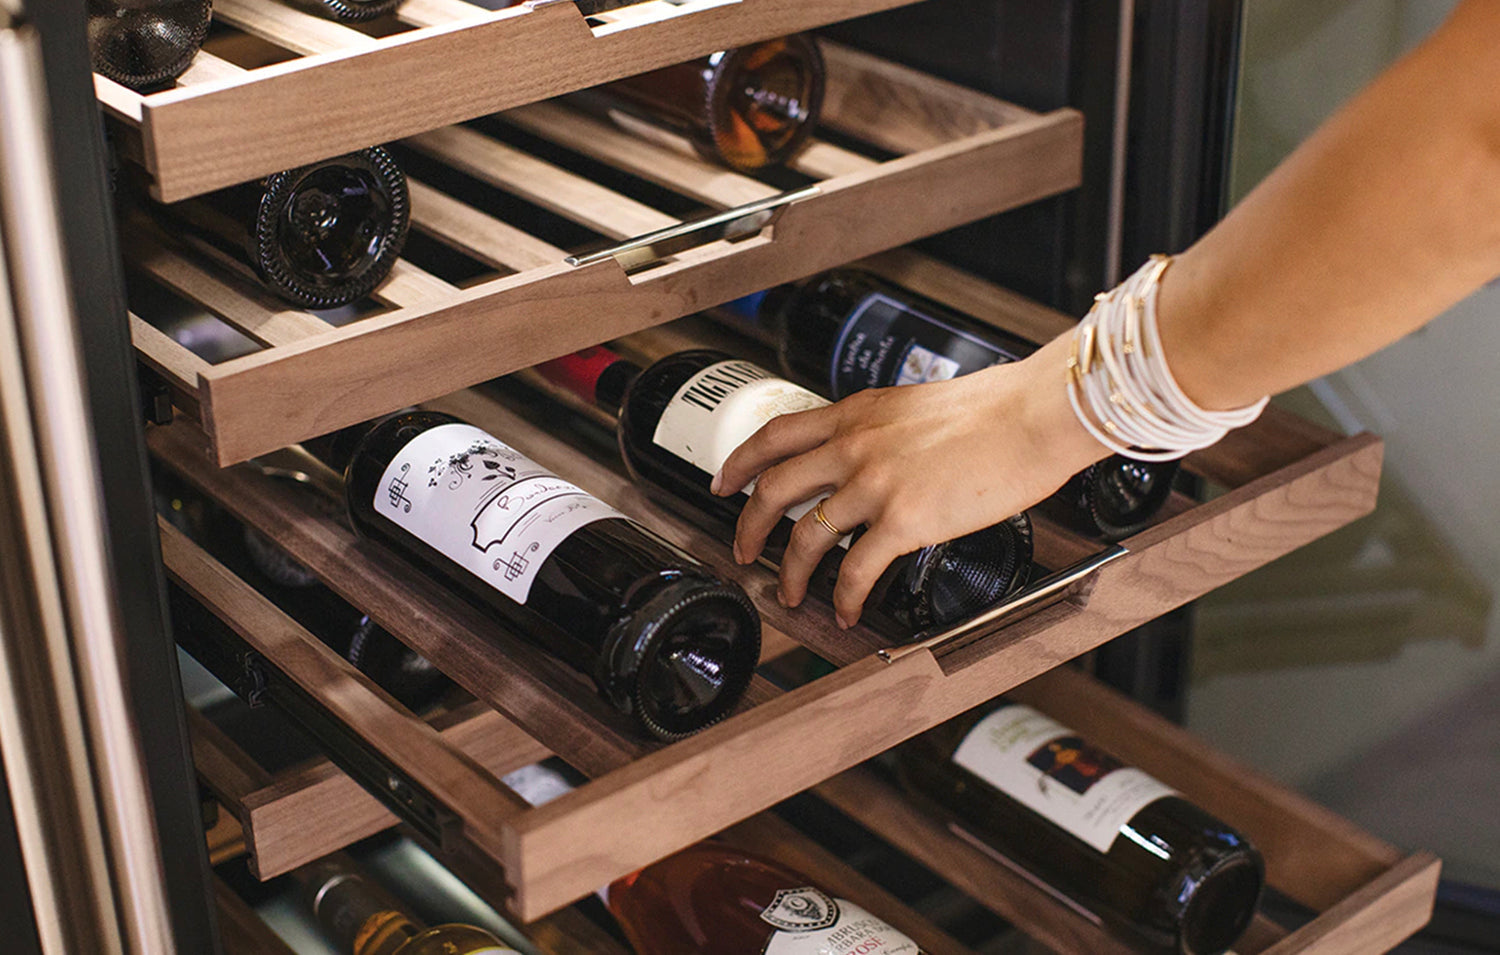 Industrial Wine Rack, 3 Tier Freestanding Wine Storage Stand